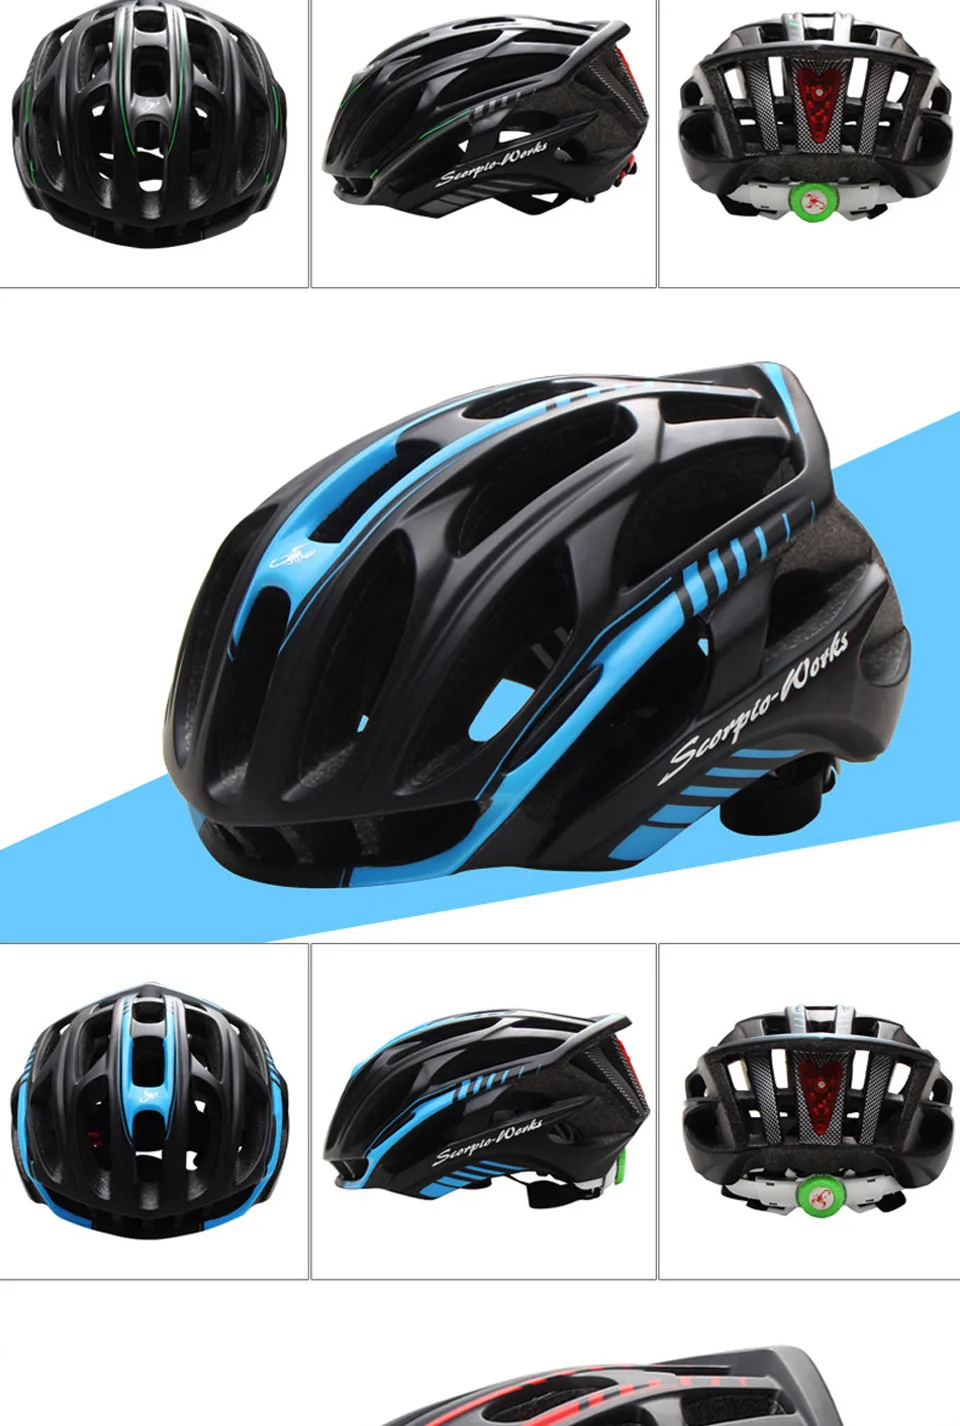 Велосипедный шлем интегрально-литой велосипедный шлем для занятий спортом на открытом воздухе дорожный горный MTB велосипедный шлем с светодиодный предупреждающий фонарь